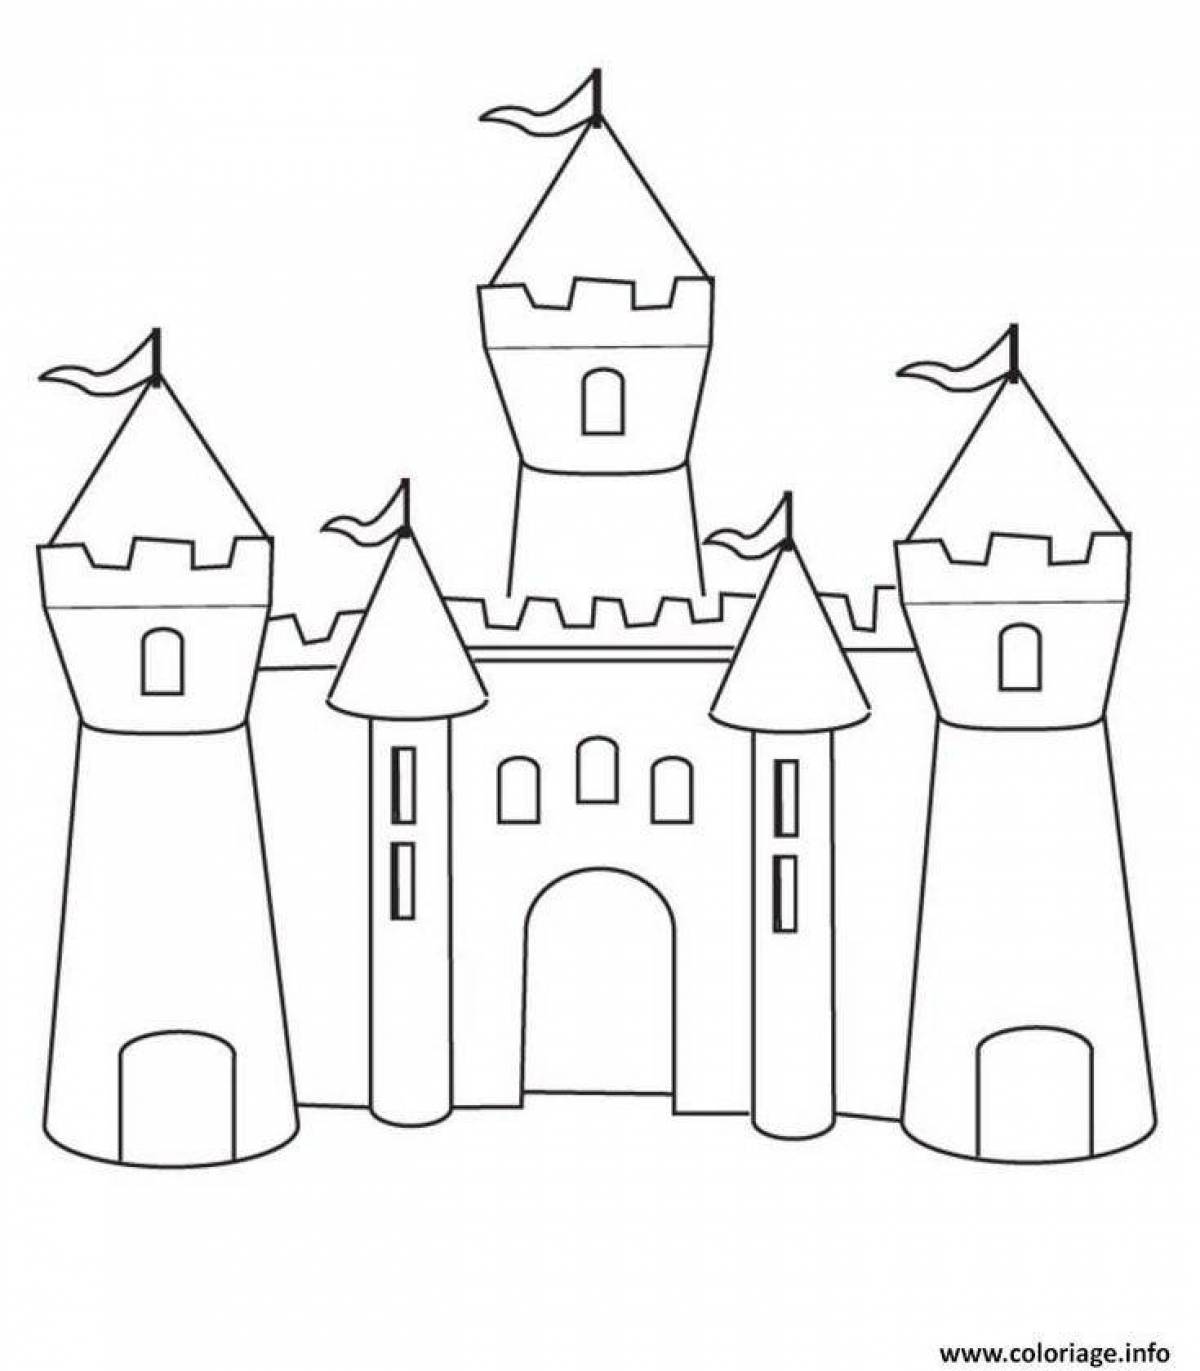 Princess's elegant castle coloring page